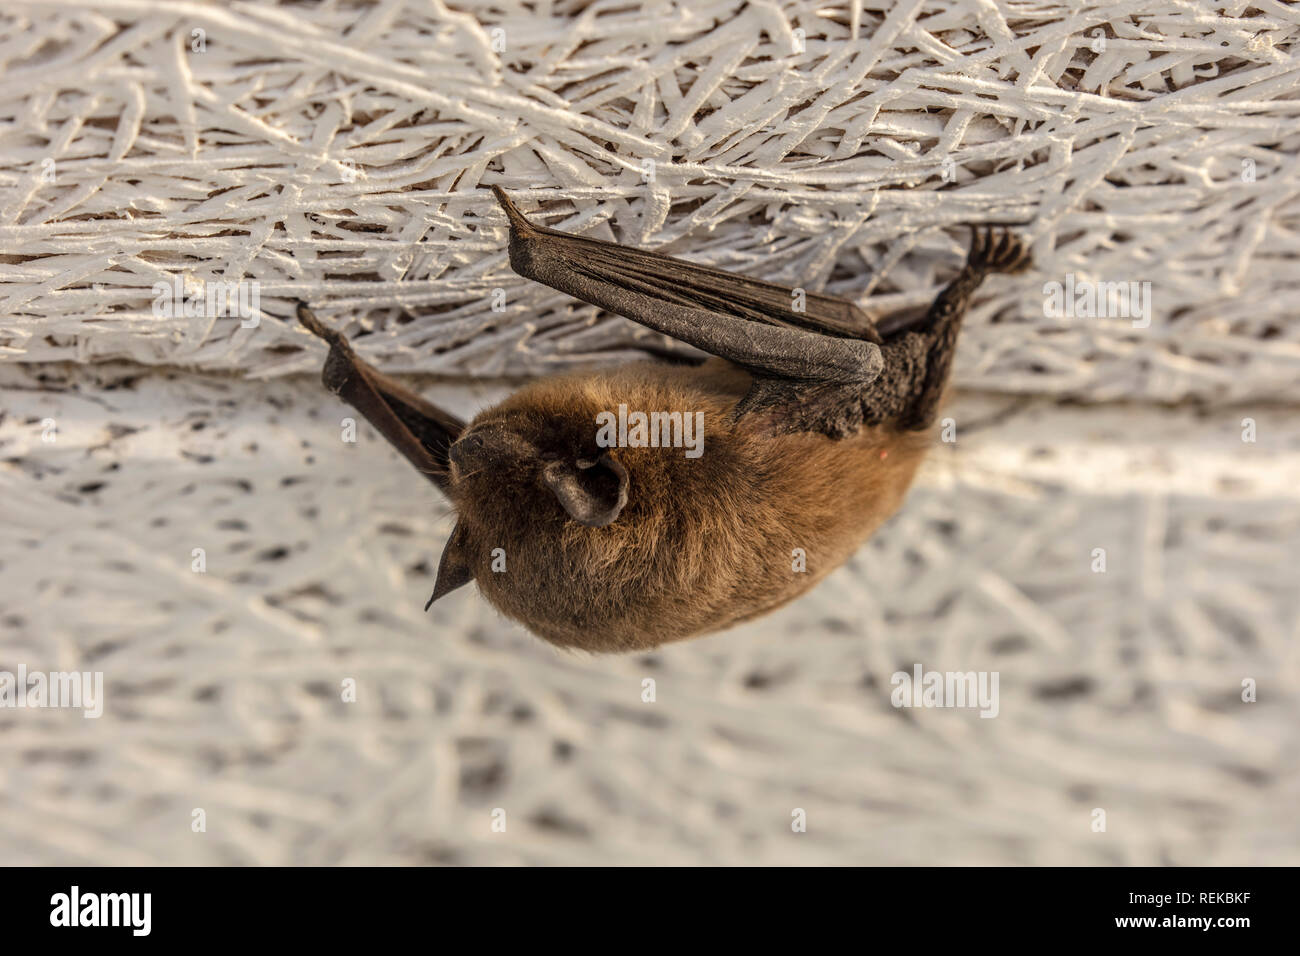 Les Pays-Bas, 's-Graveland, la pipistrelle commune (Pipistrellus bat nain ou pipistrellus). Banque D'Images